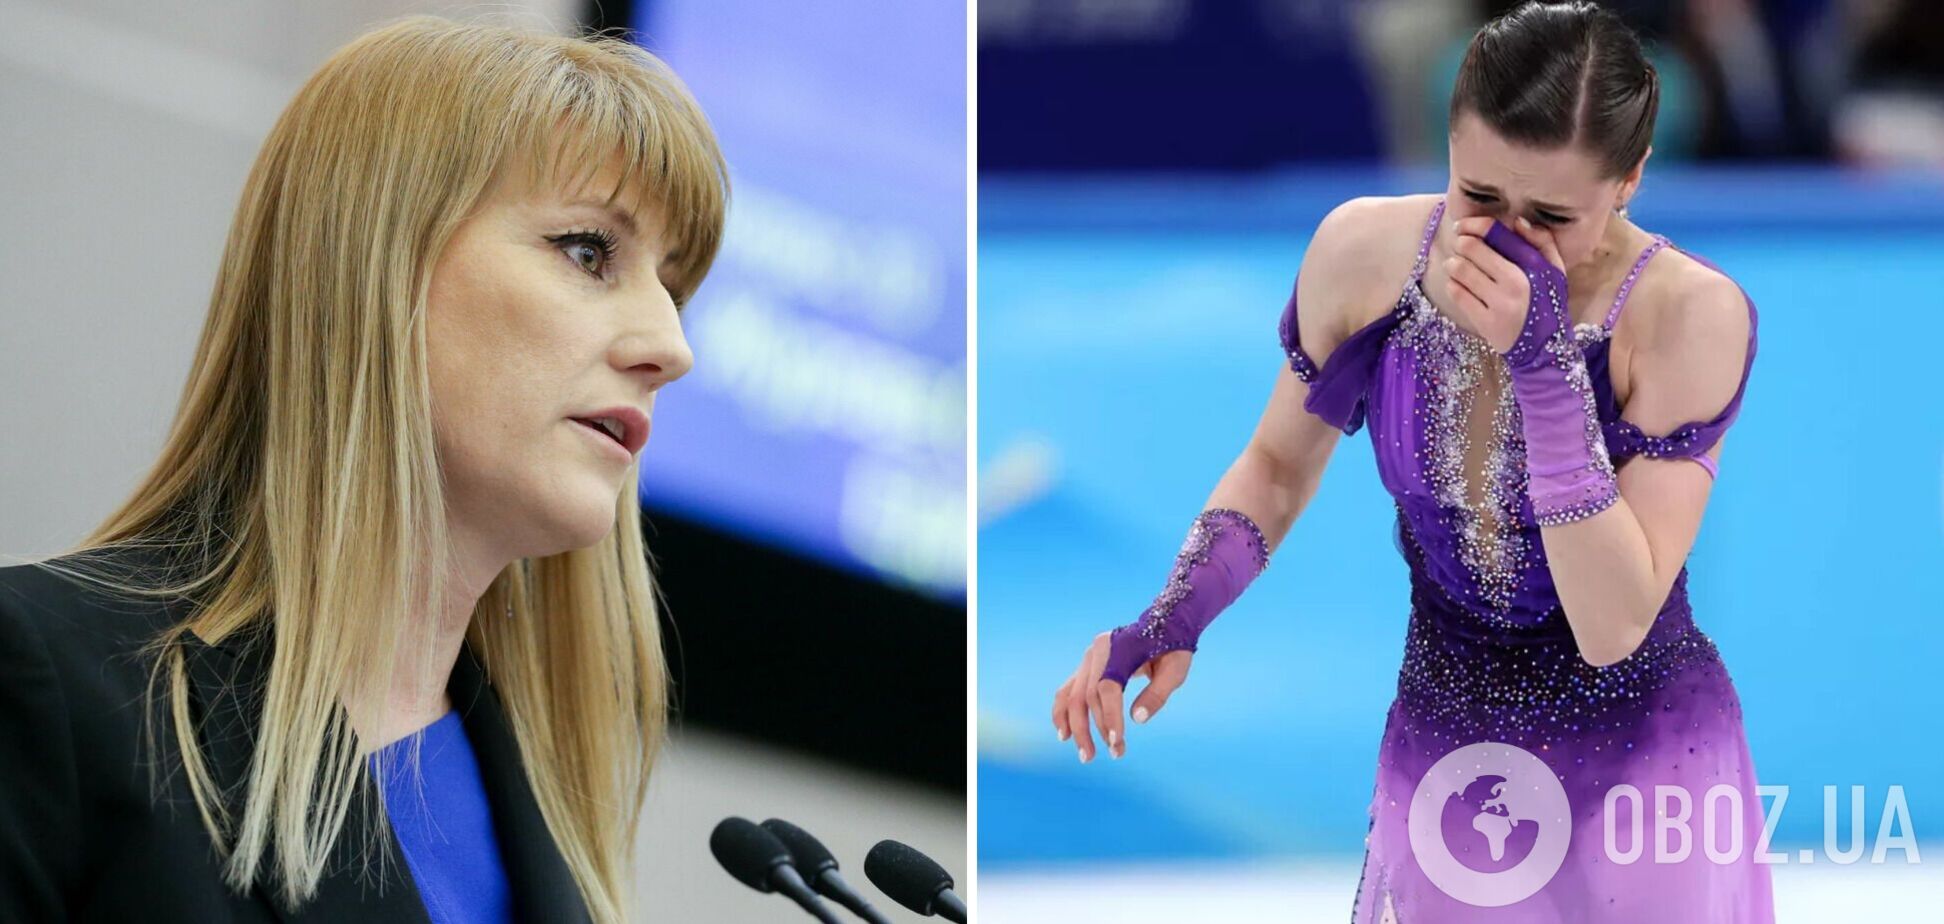 'Политический заказ': чемпионка ОИ из РФ заявила, что Валиеву не имели права наказывать за допинг